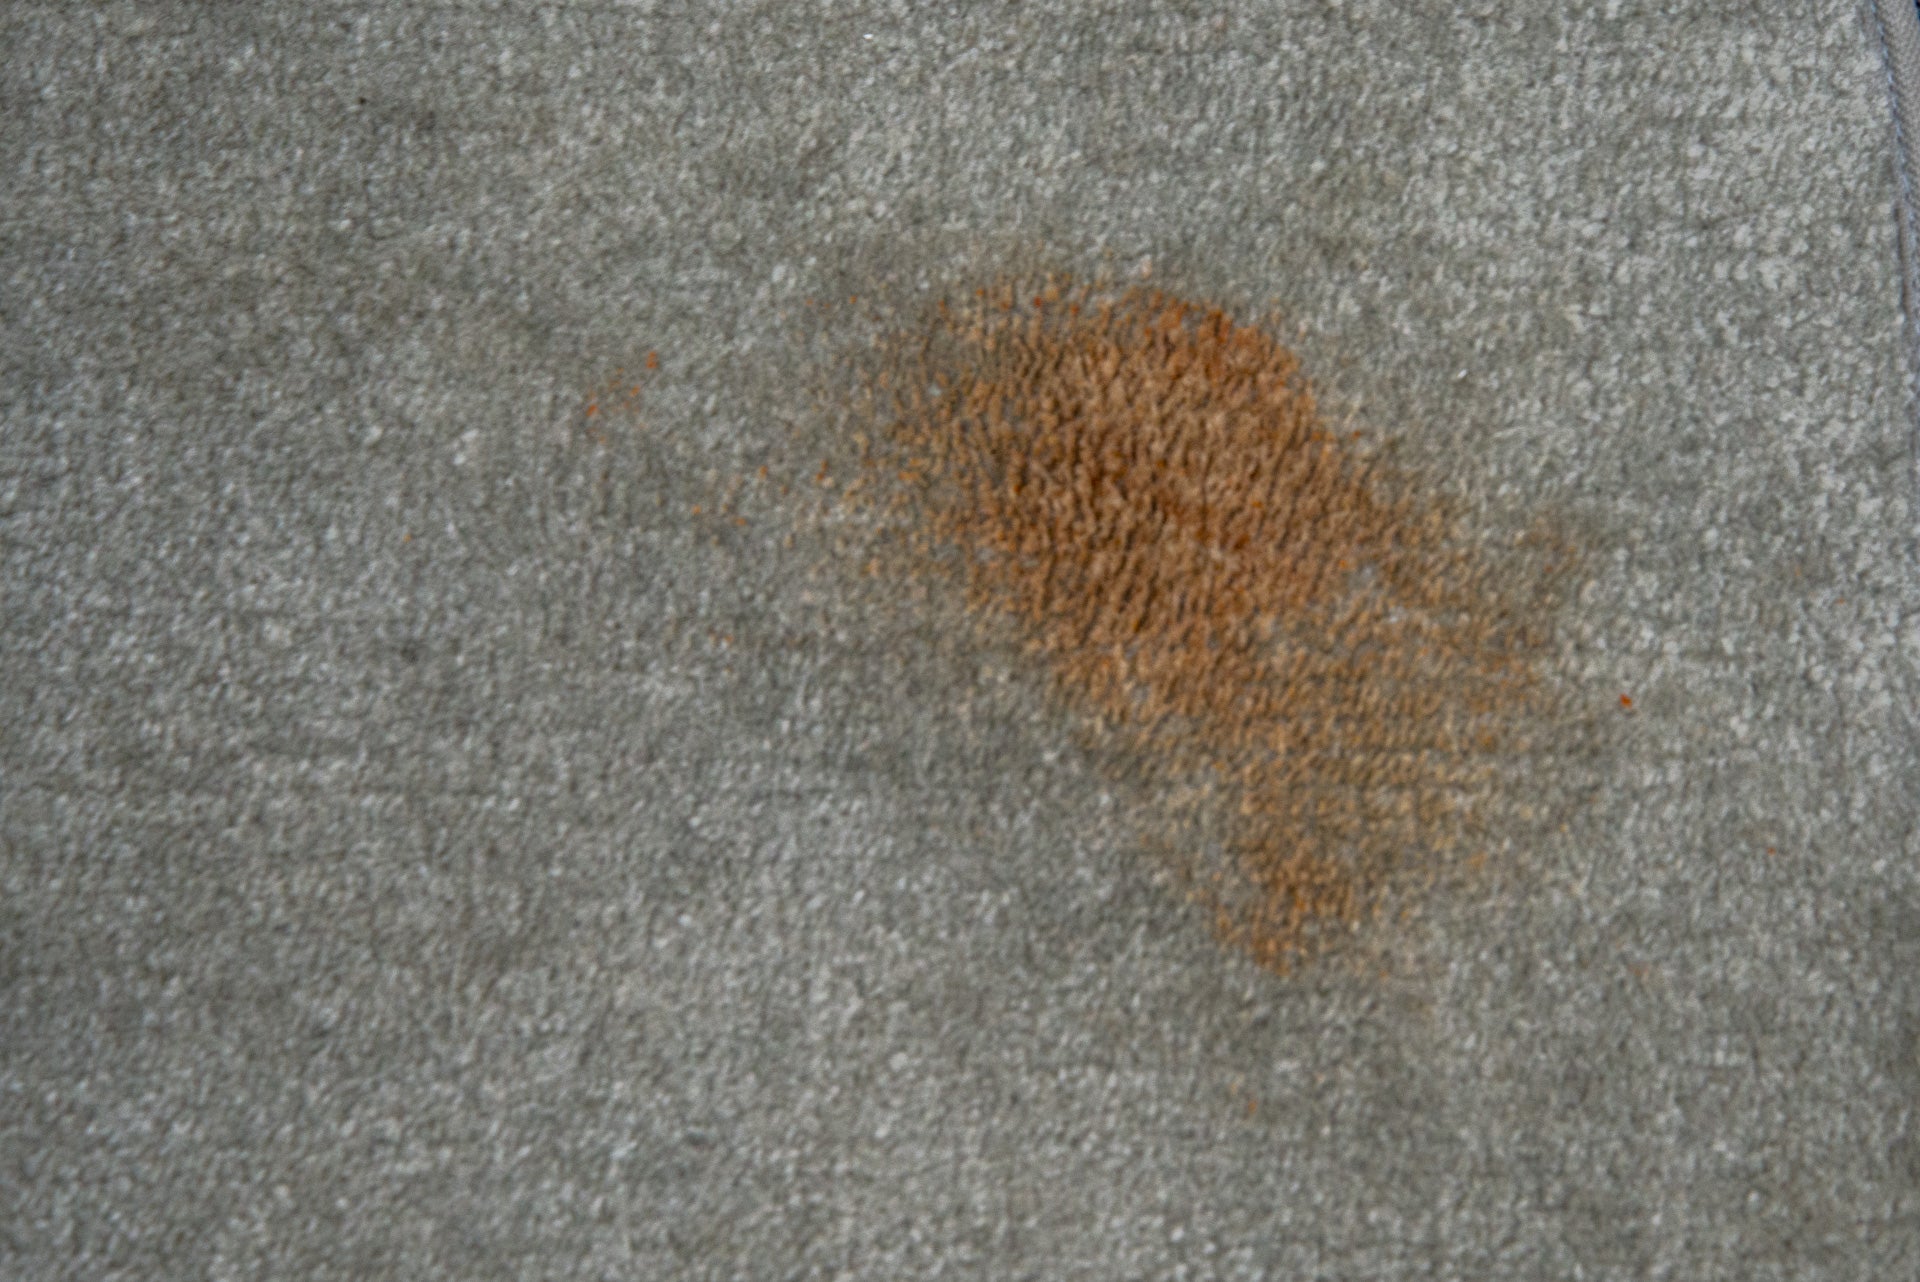 Ein Ketchupfleck auf einem Teppich